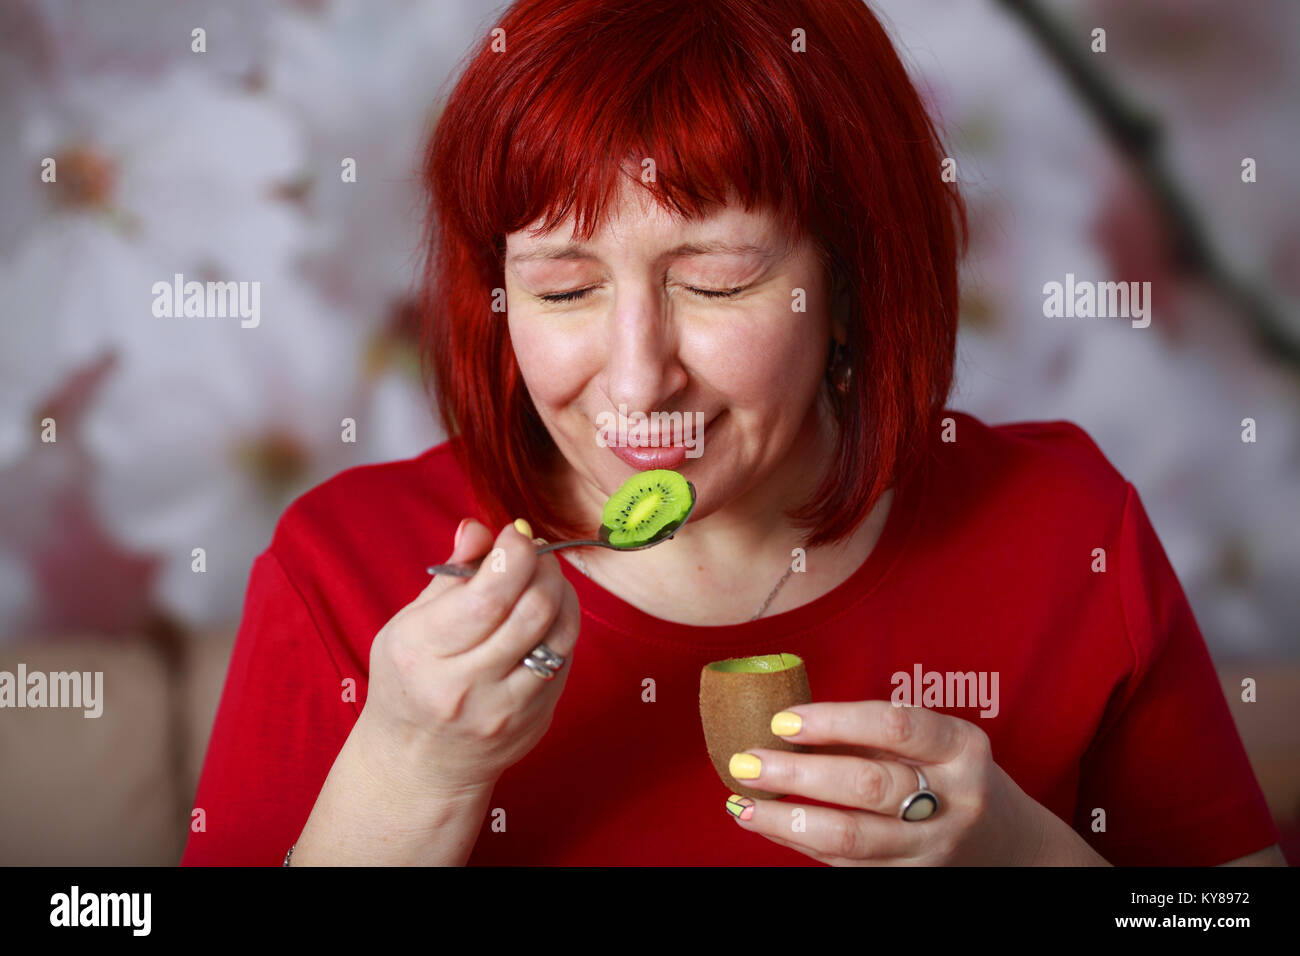 Glamorous young woman eating kiwi et loucher du plaisir. Quel plaisir de manger ce juteux, fruits mûrs et sains. Banque D'Images